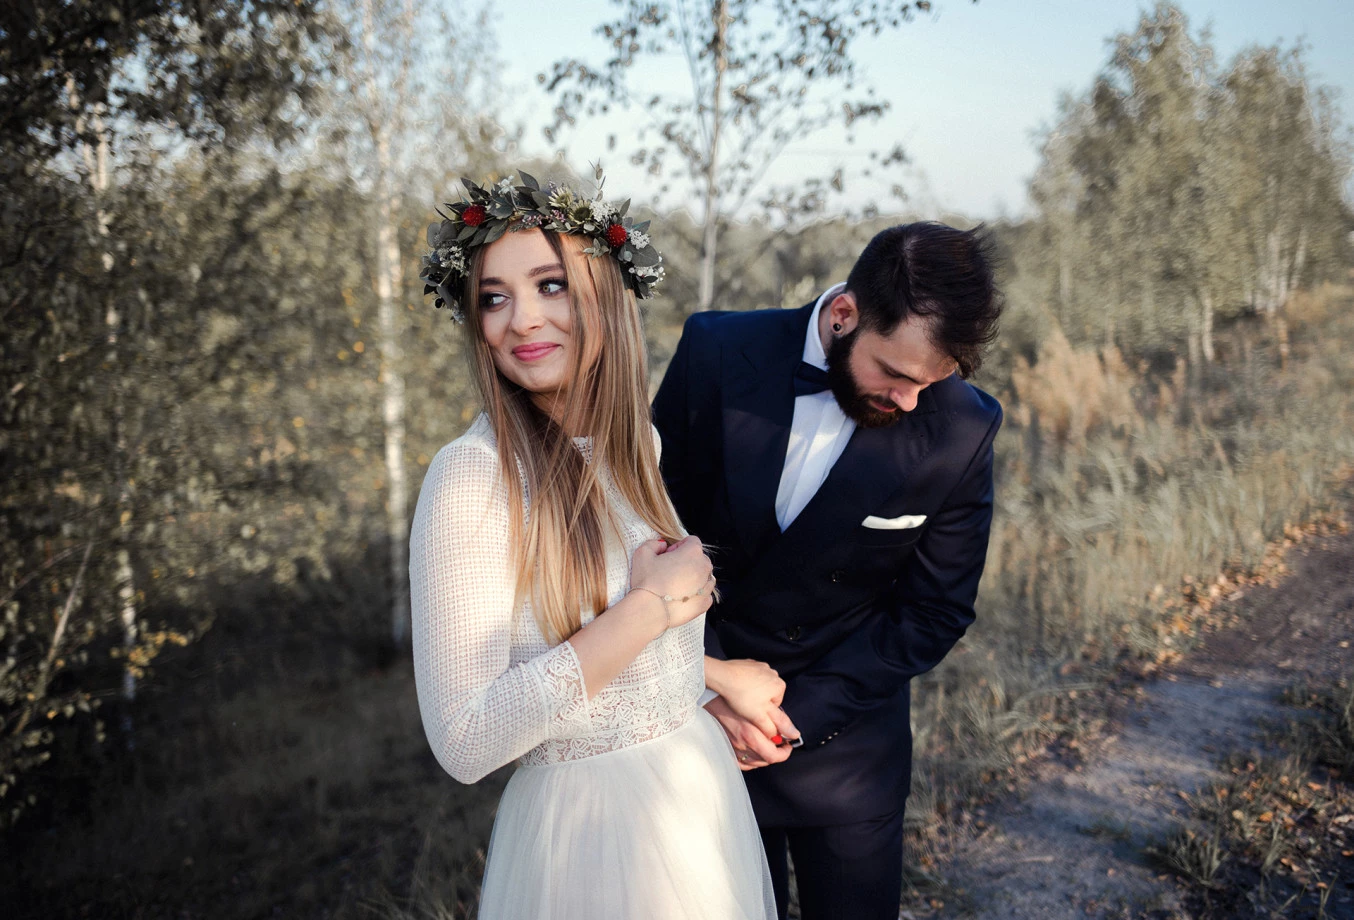 fotograf katowice zwelonemczybez portfolio zdjecia slubne inspiracje wesele plener slubny sesja slubna